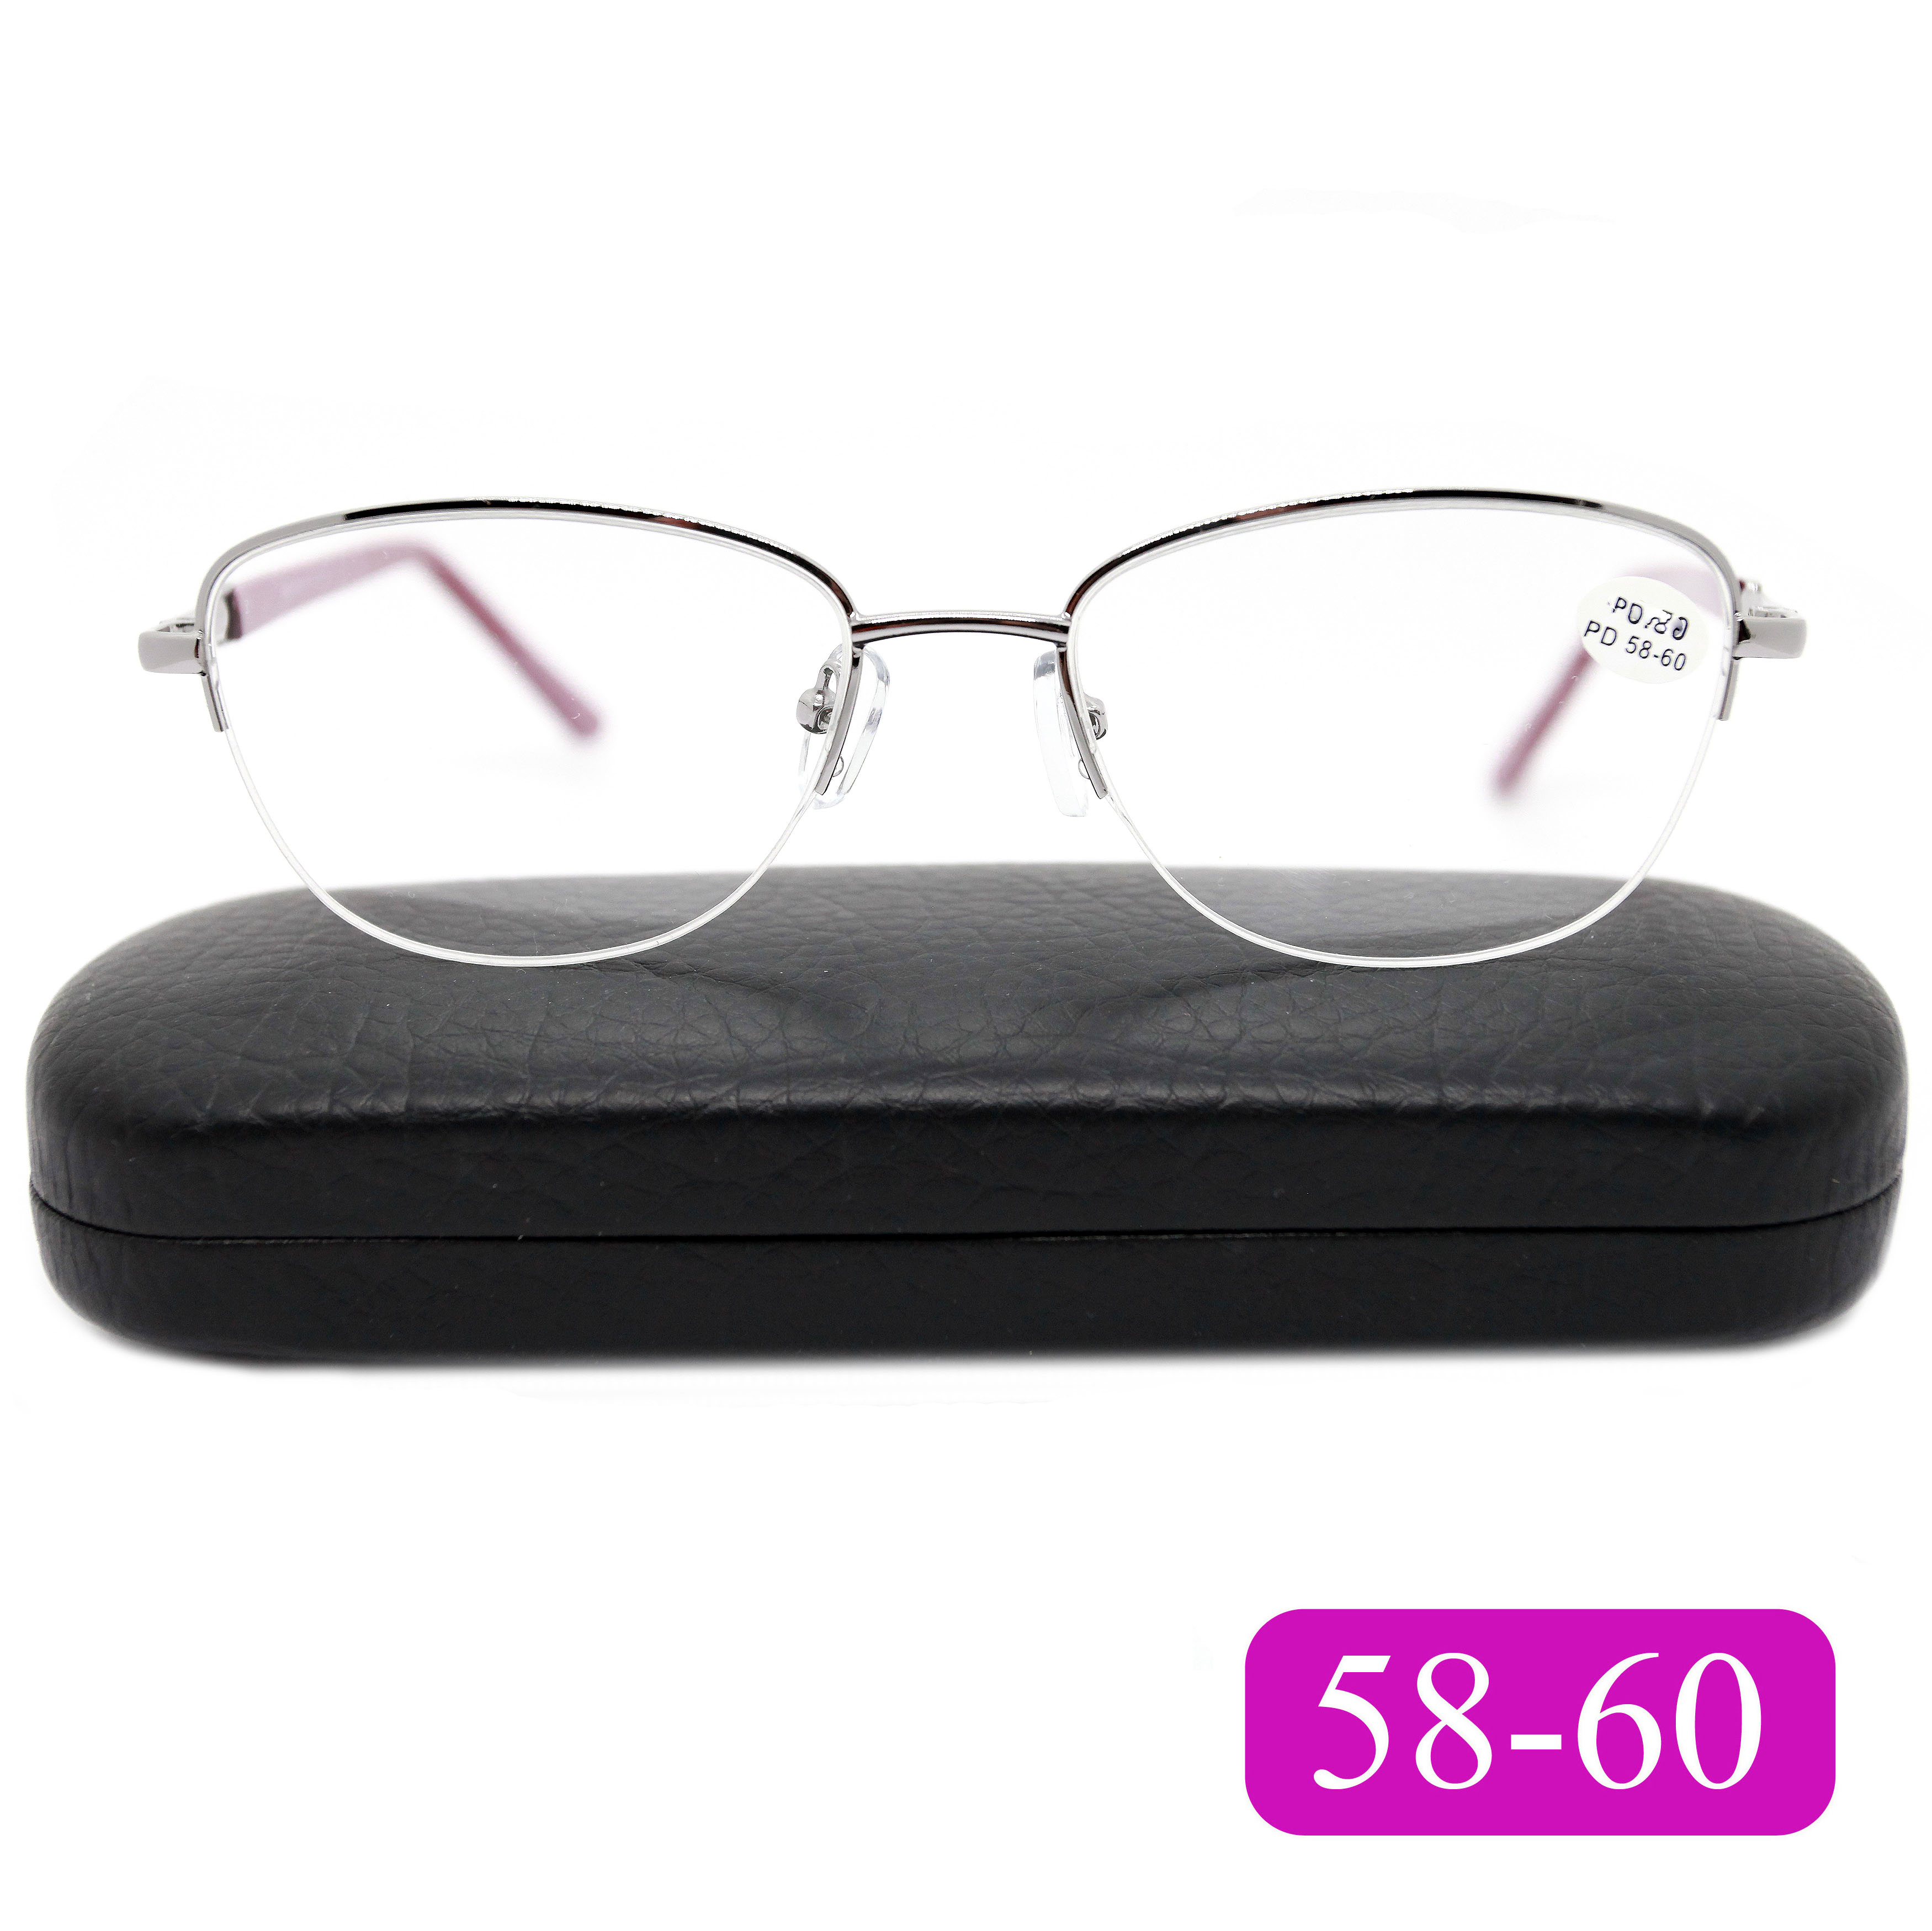 Готовые очки Fabia Monti 8920 +6.50, c футляром, цвет малиновый, РЦ 58-60